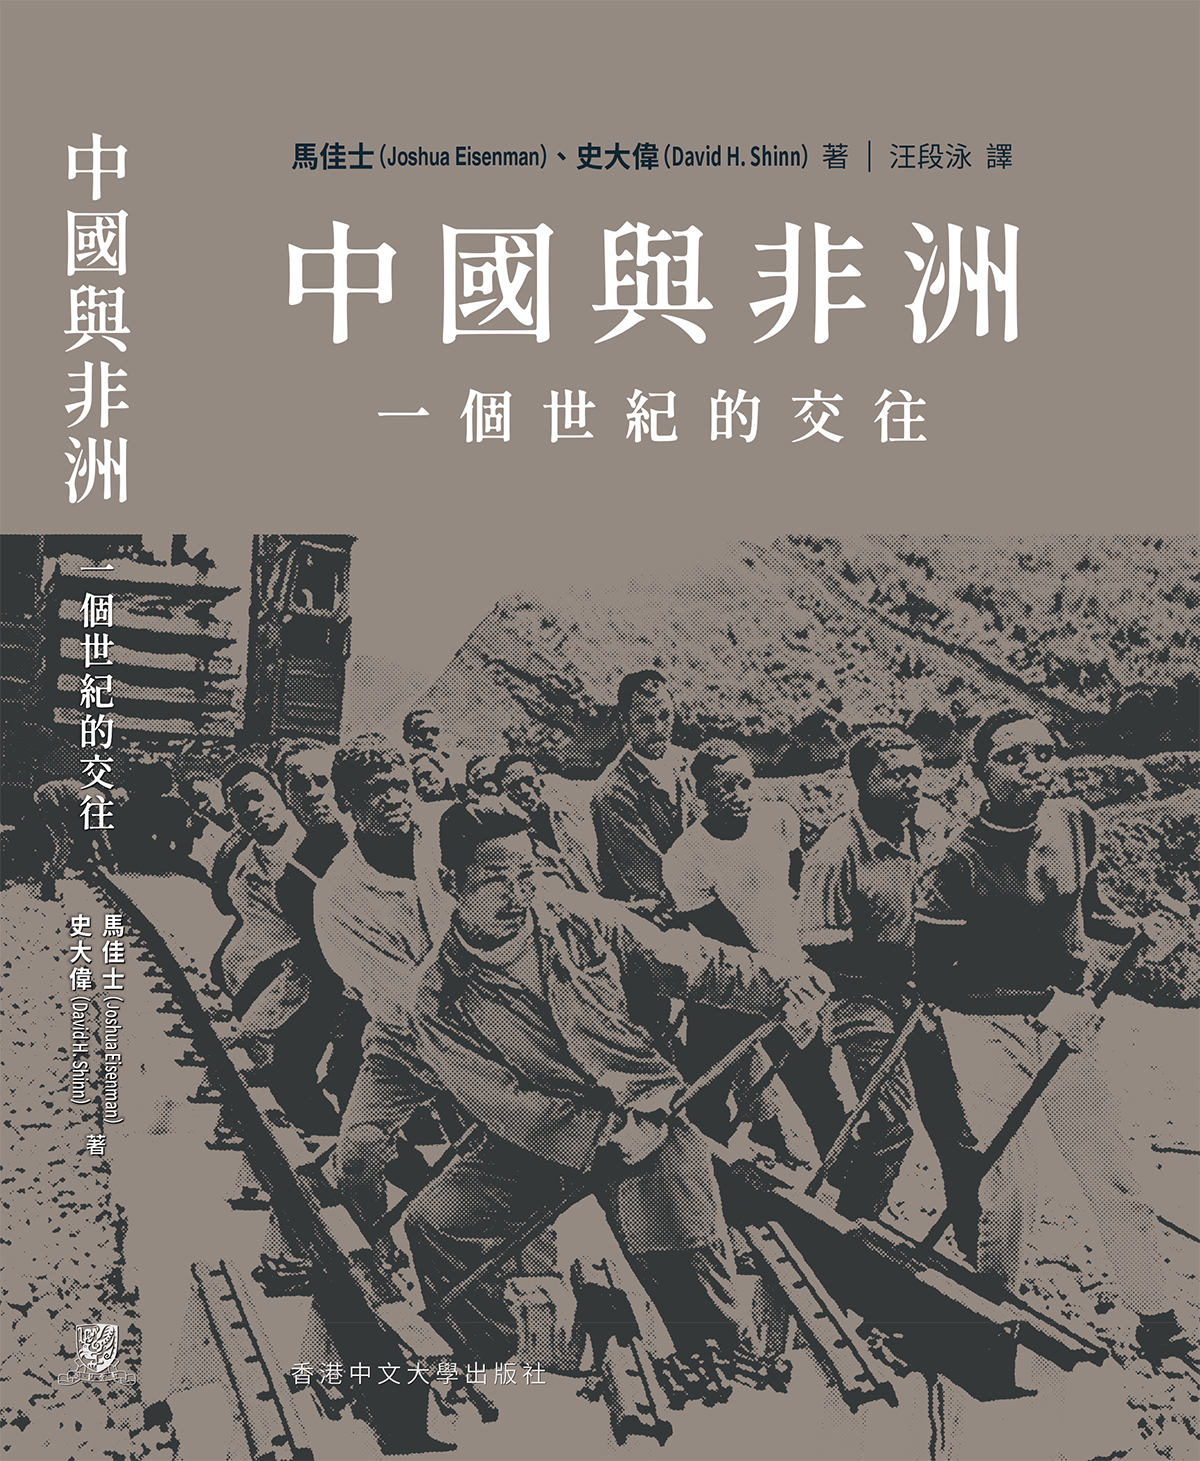 新书发布: “中国与非洲: 一个世纪的交往” | Joshua Eisenman Book